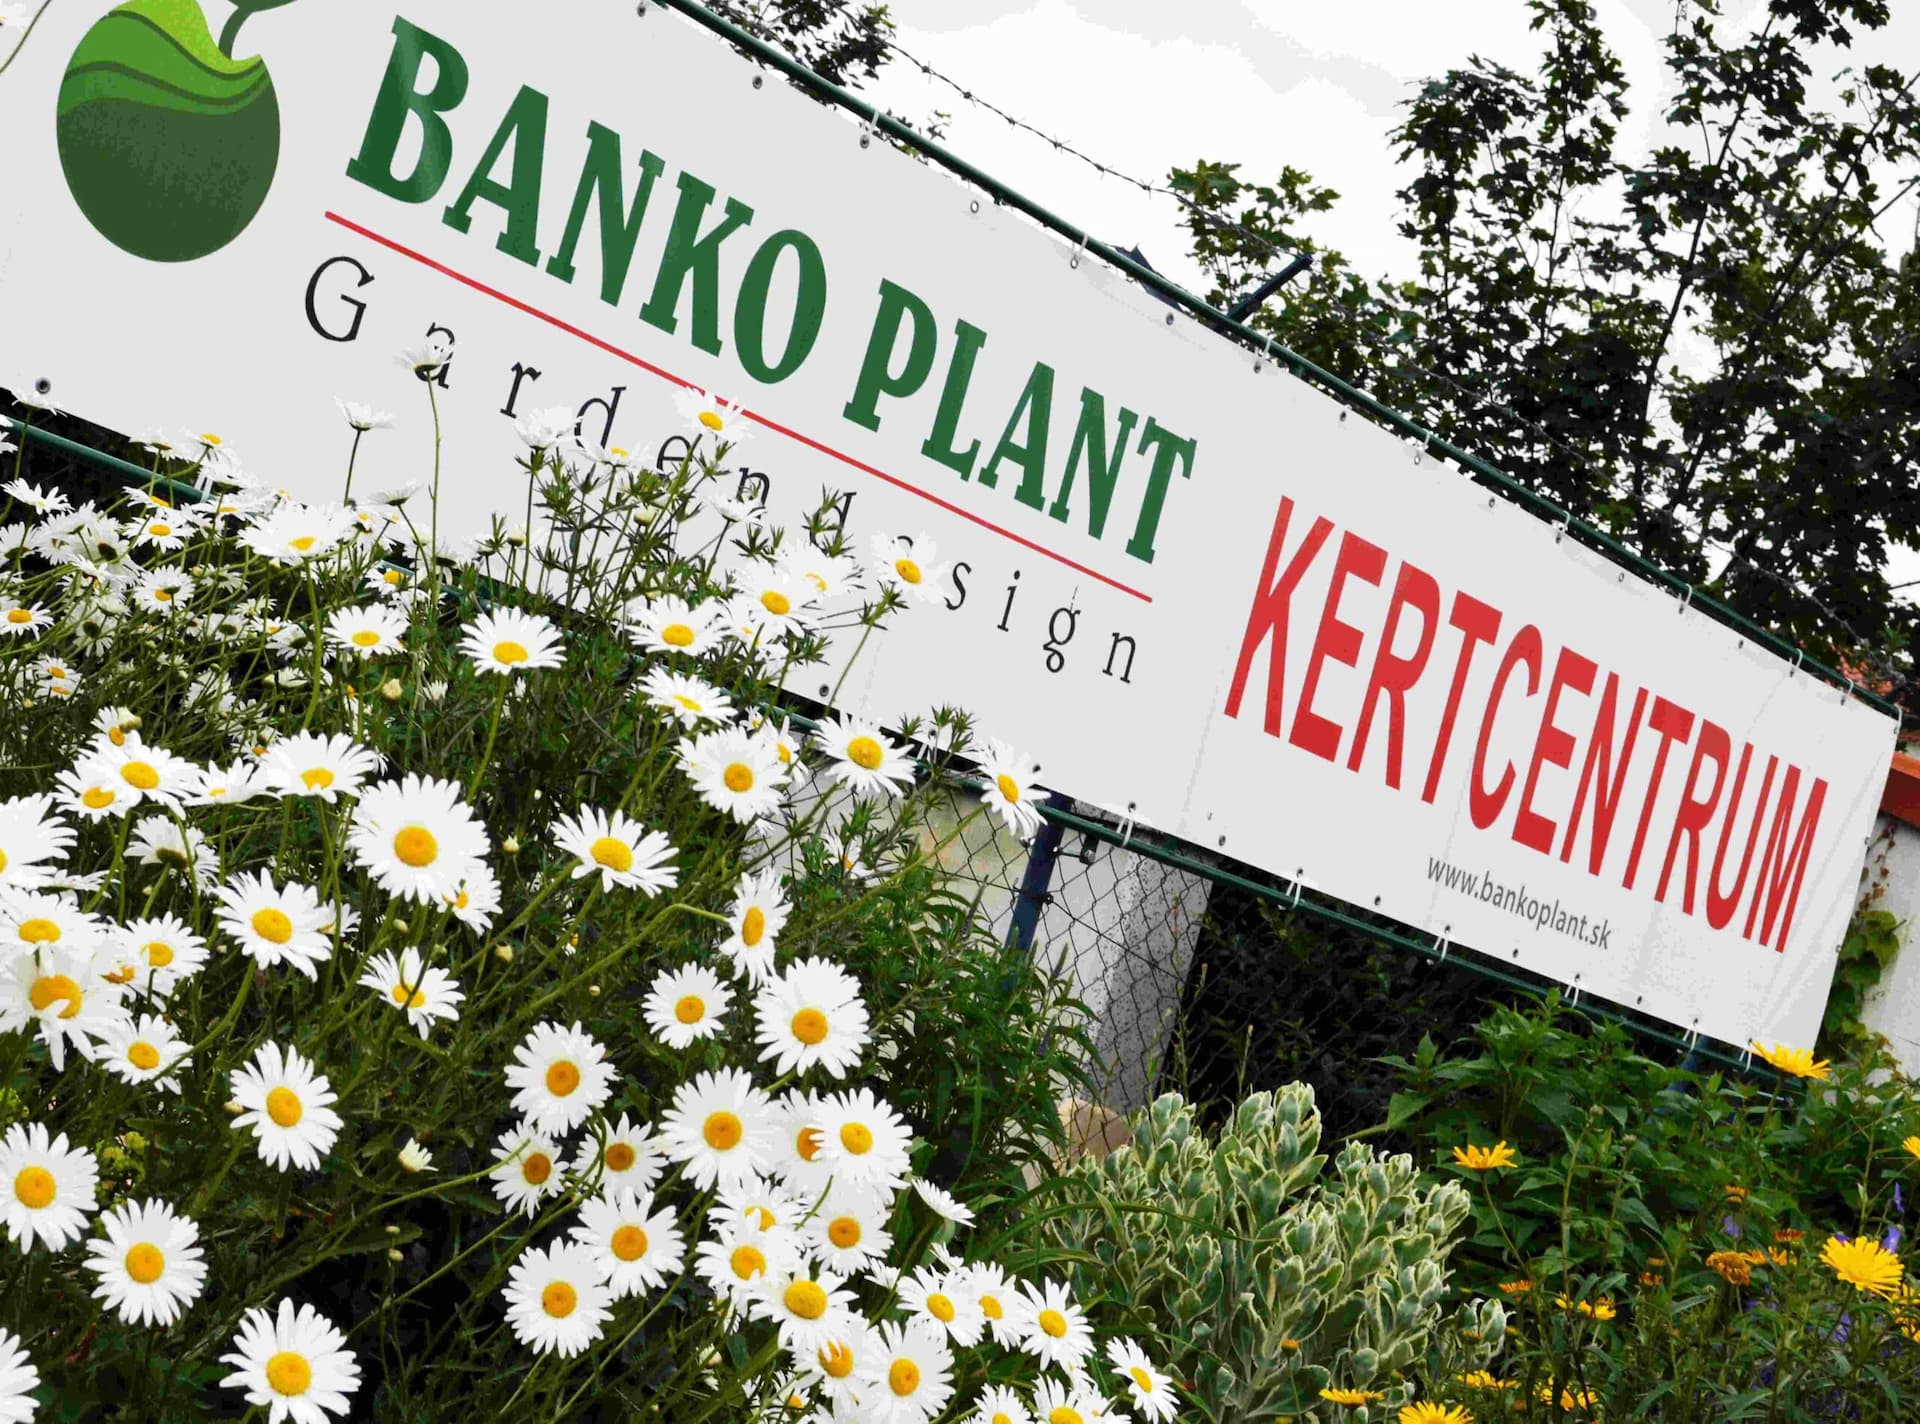 BANKOPLANT: Tavasz végi kiárusítás a dunaszerdahelyi kertcentrumban